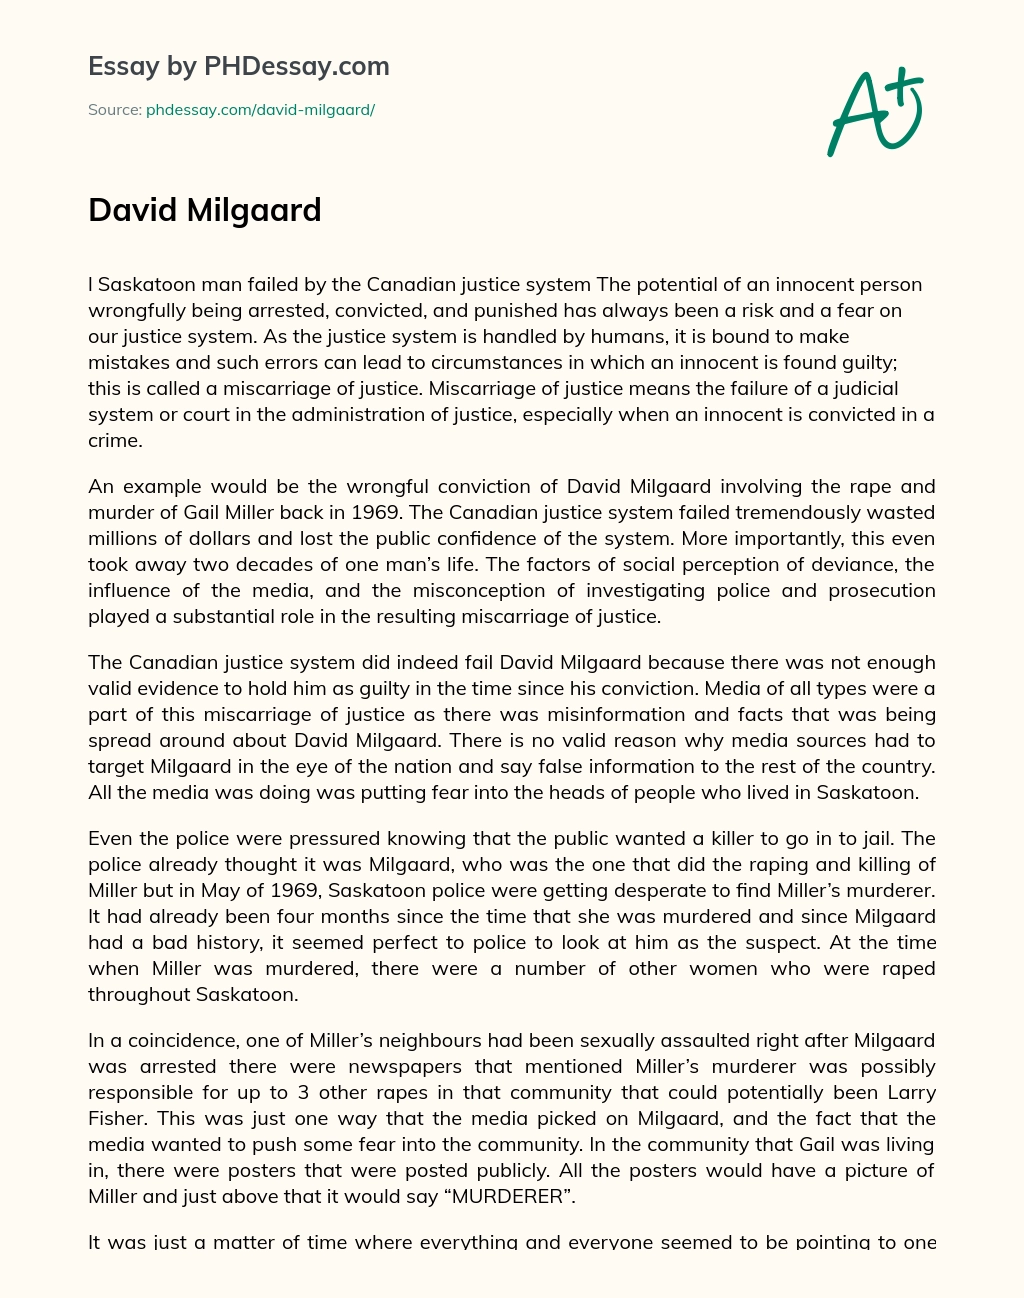 David Milgaard essay